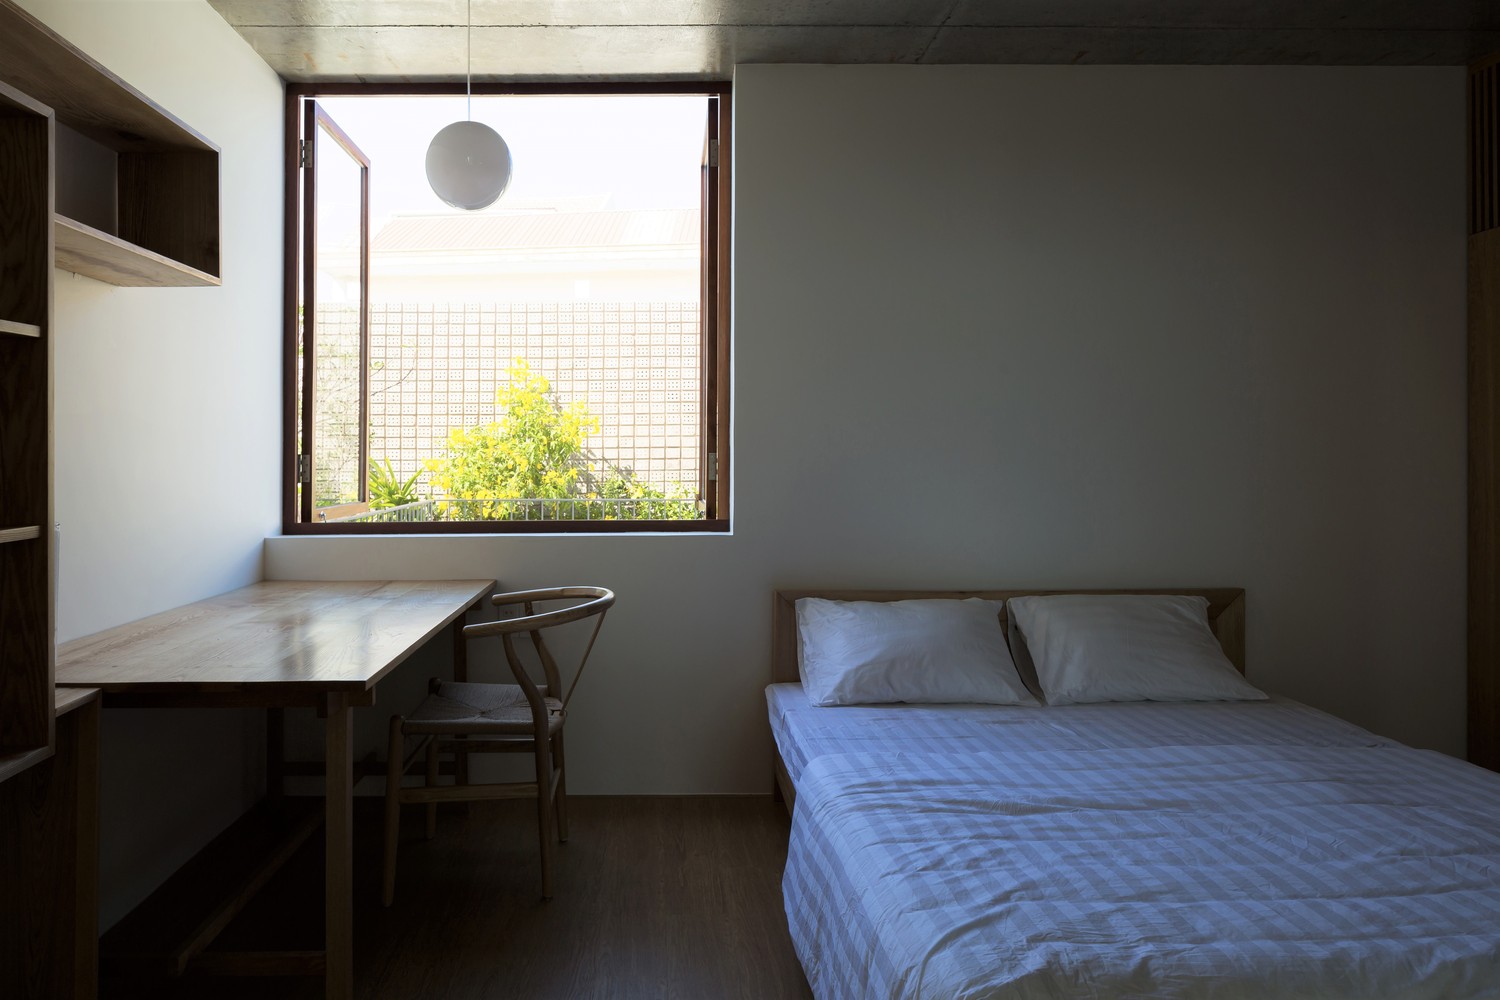 hình ảnh phòng ngủ nhỏ với giường nệm màu trắng, bàn gỗ, giá sách gỗ gắn tường, cửa sổ mở ra sân vườn